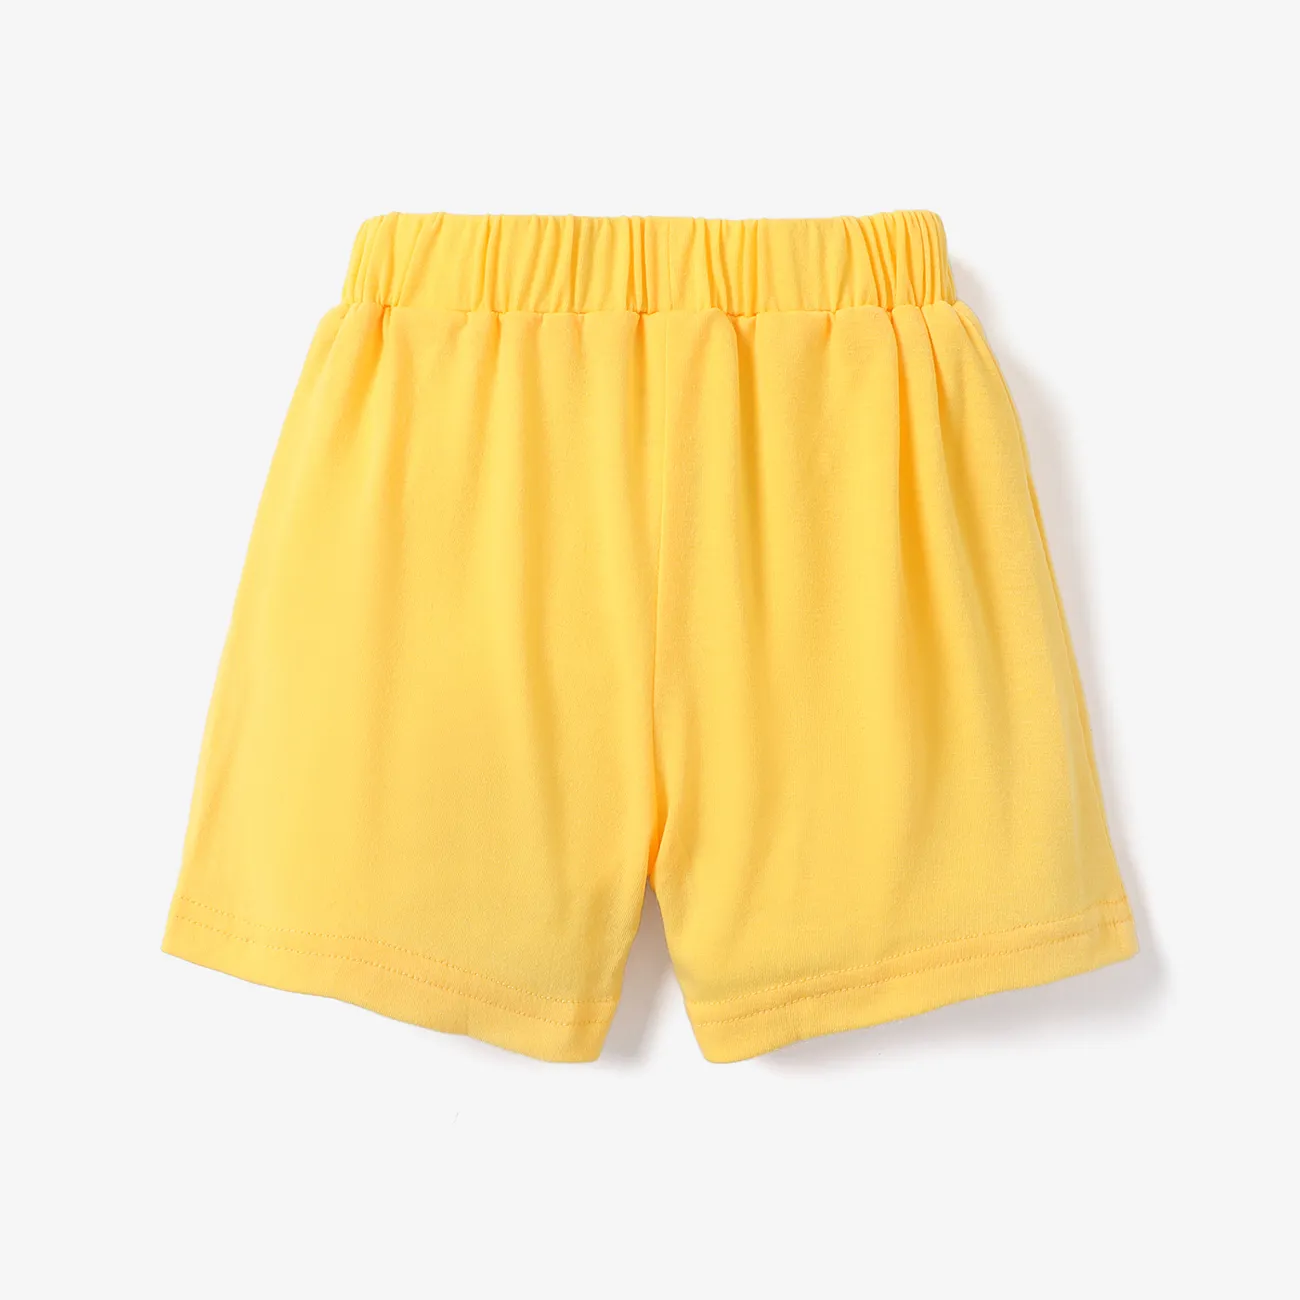 Kleinkinder Unisex Basics Shorts gelb big image 1